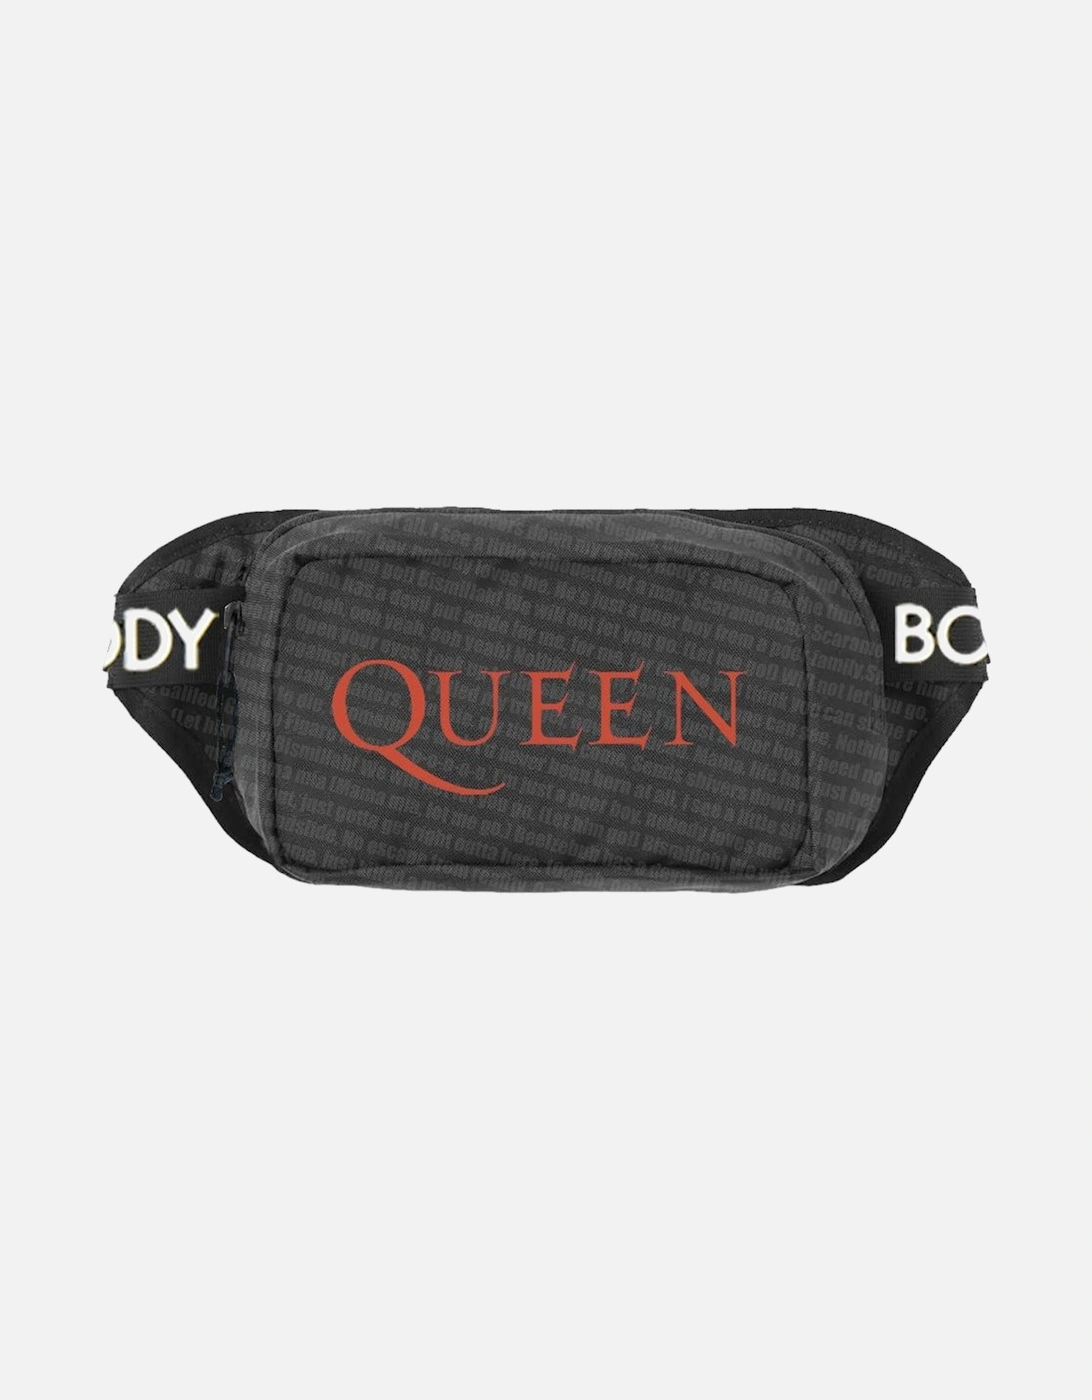 Bohemian Rhapsody Queen Shoulder Bag, 2 of 1